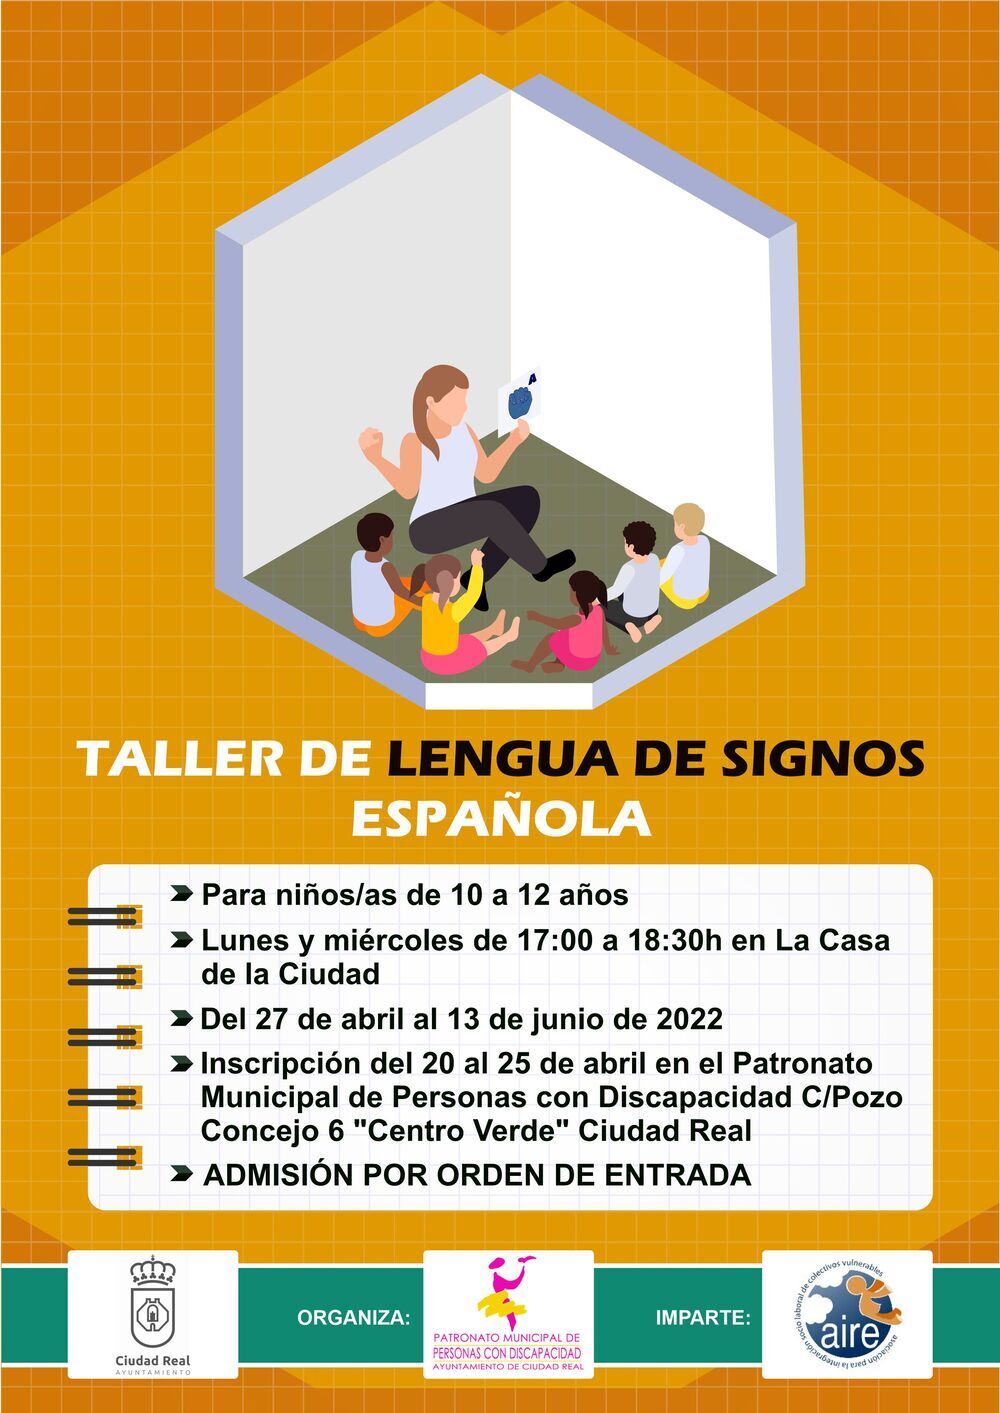 En marcha taller de lengua de signos para niños en Ciudad Real